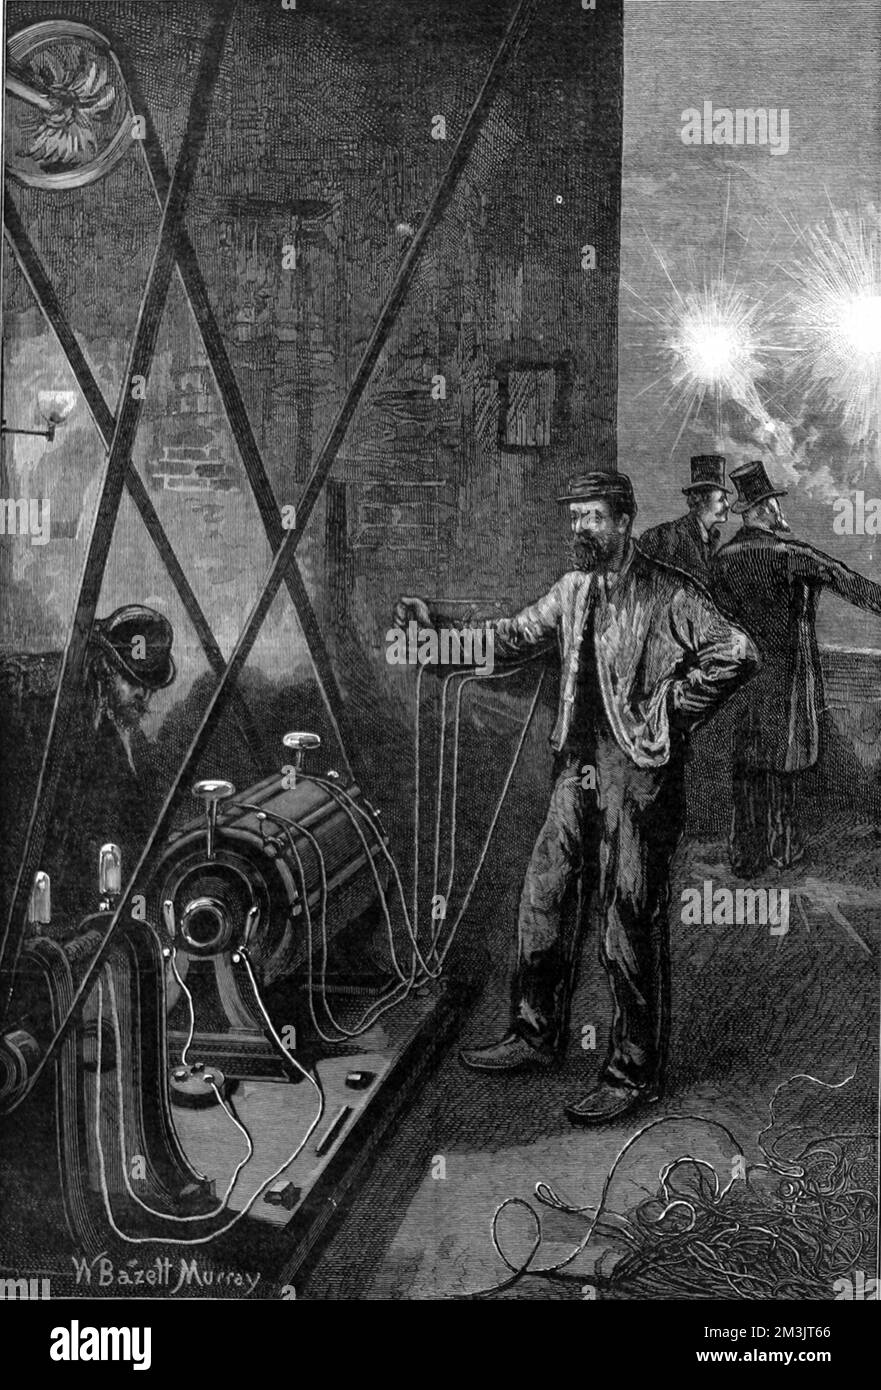 Dynamo à courant continu de Gram. Zenobe Theophile Gram (1826 - 1901) a construit la première dynamo réussie en 1869, incorporant une armature à anneau (anneau de Gram), qui, après diverses améliorations, a fabriqué en 1871. Il a été le premier générateur électrique à être utilisé commercialement, pour l'électroplacage ainsi que pour l'éclairage électrique. Banque D'Images